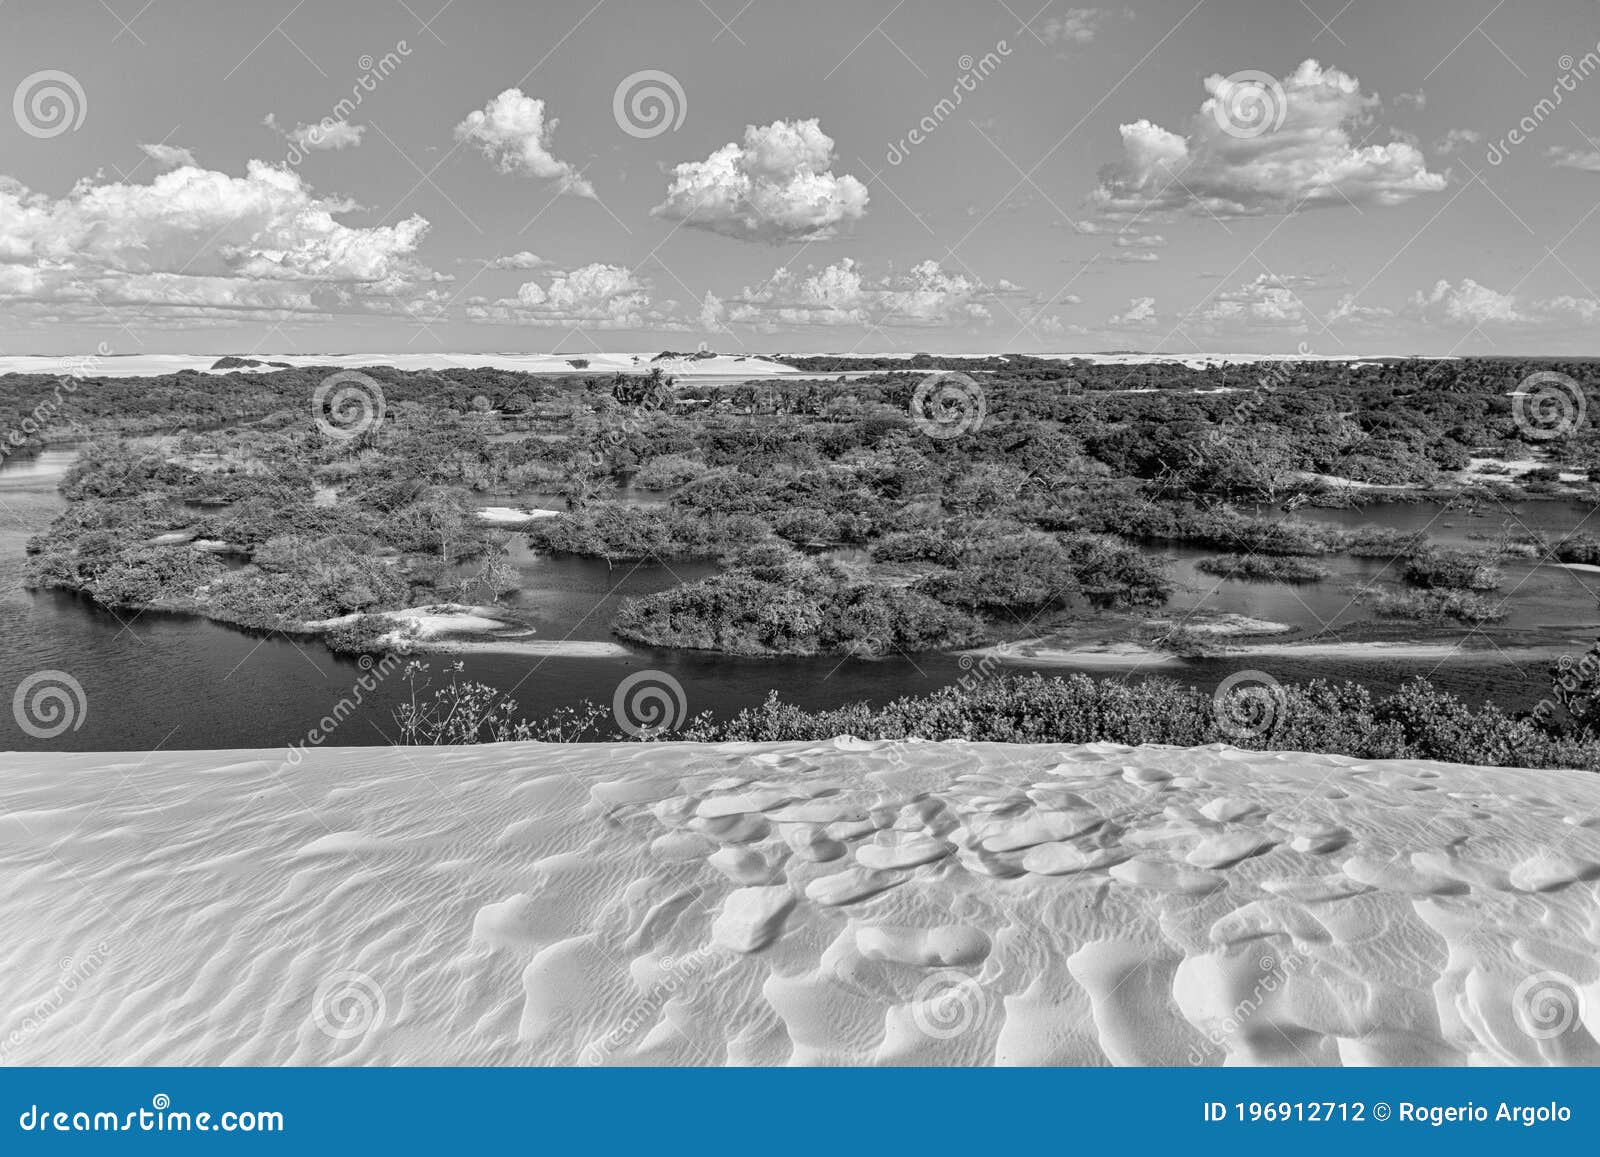 lenÃÂ§ois maranhenses, barreirinhas, maranhÃÂ£o, brazil - dunes, mangrove, forest and blue sky